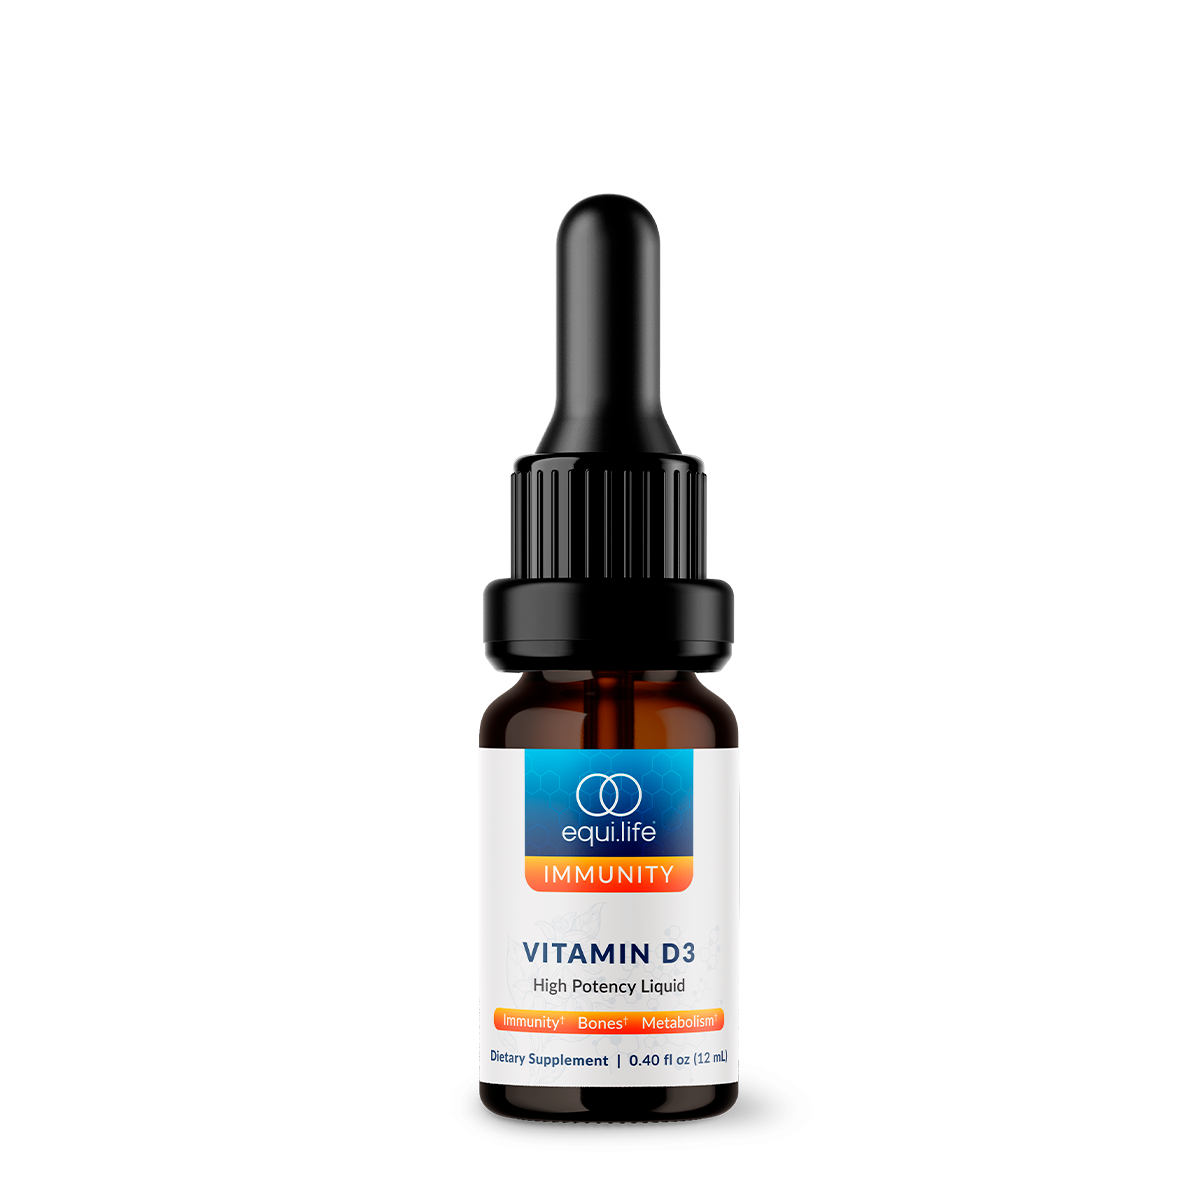 Vitamin D3: High-Potency Liquid